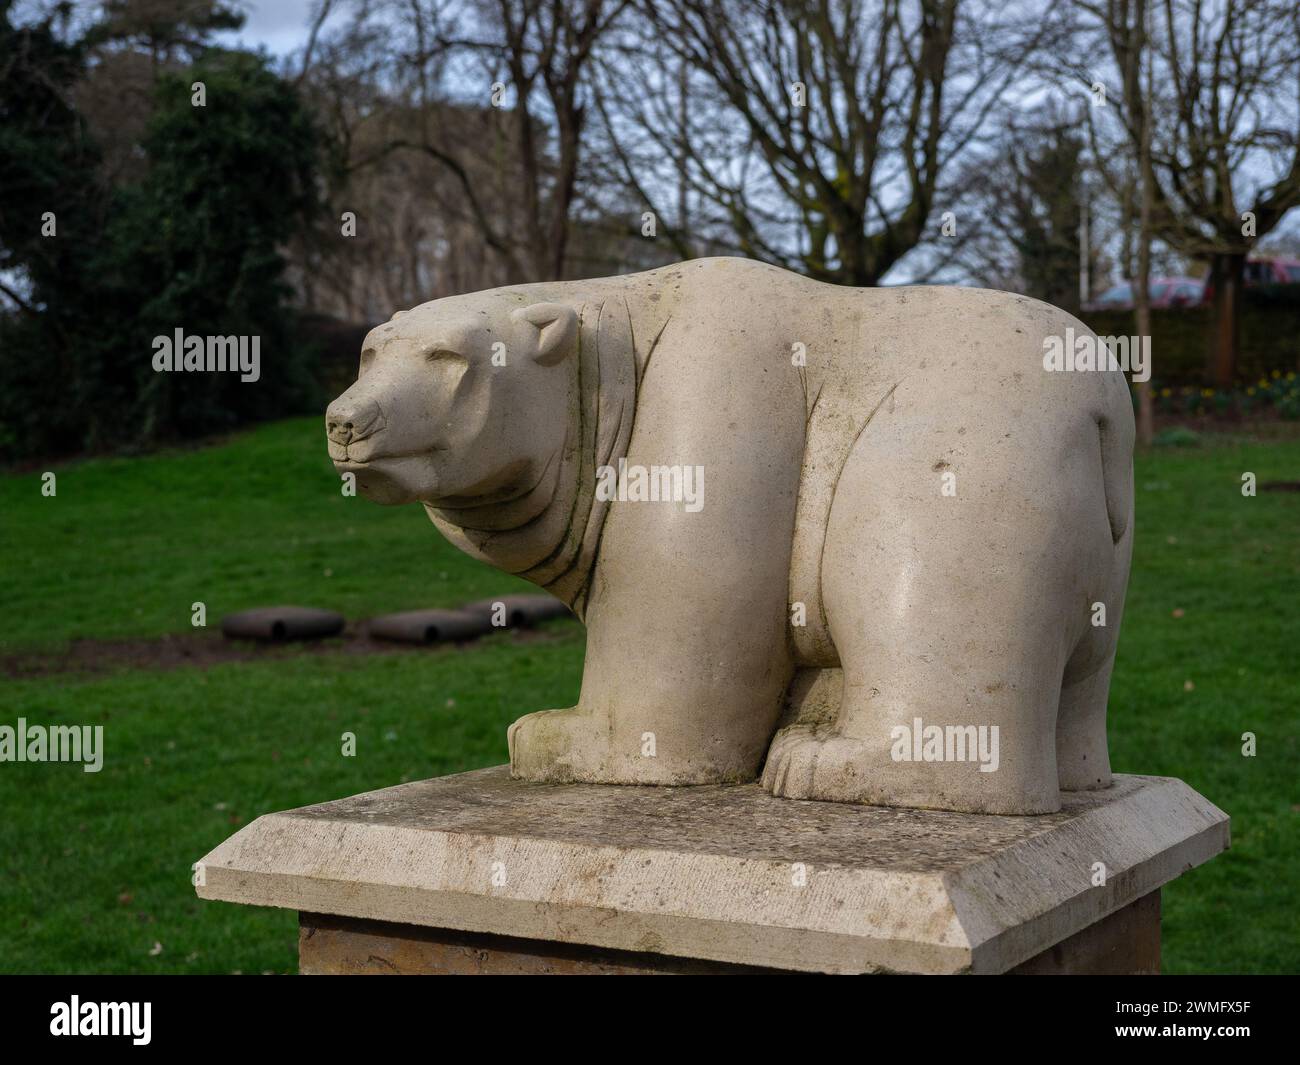 Sculpture calcaire d'un ours polaire, Croyland Gardens, Wellingborough, Royaume-Uni ; en mémoire d'un animal autrefois logé dans l'ancien zoo dans les jardins. Banque D'Images